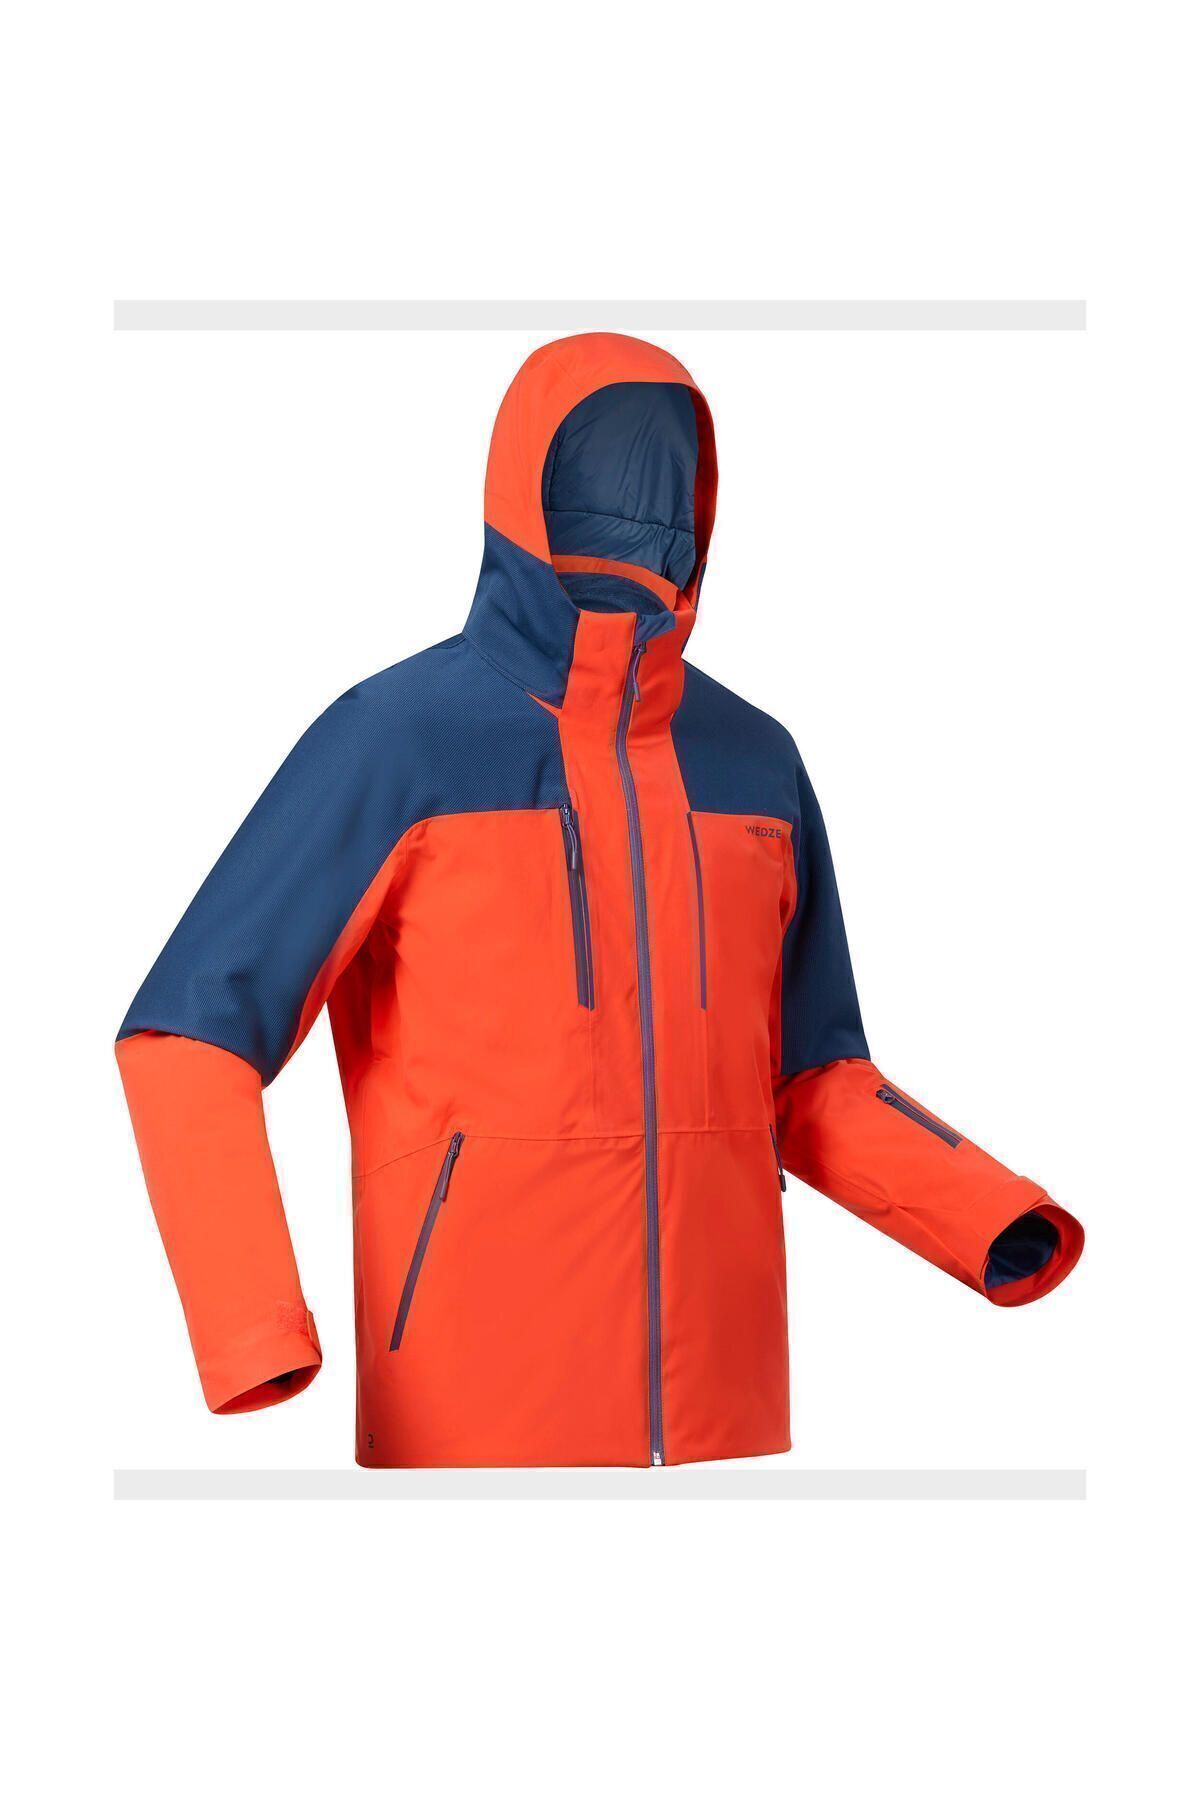 Мужская лыжная куртка Decathlon — красная/синяя — 500 TYCF8BODJN170179091886355